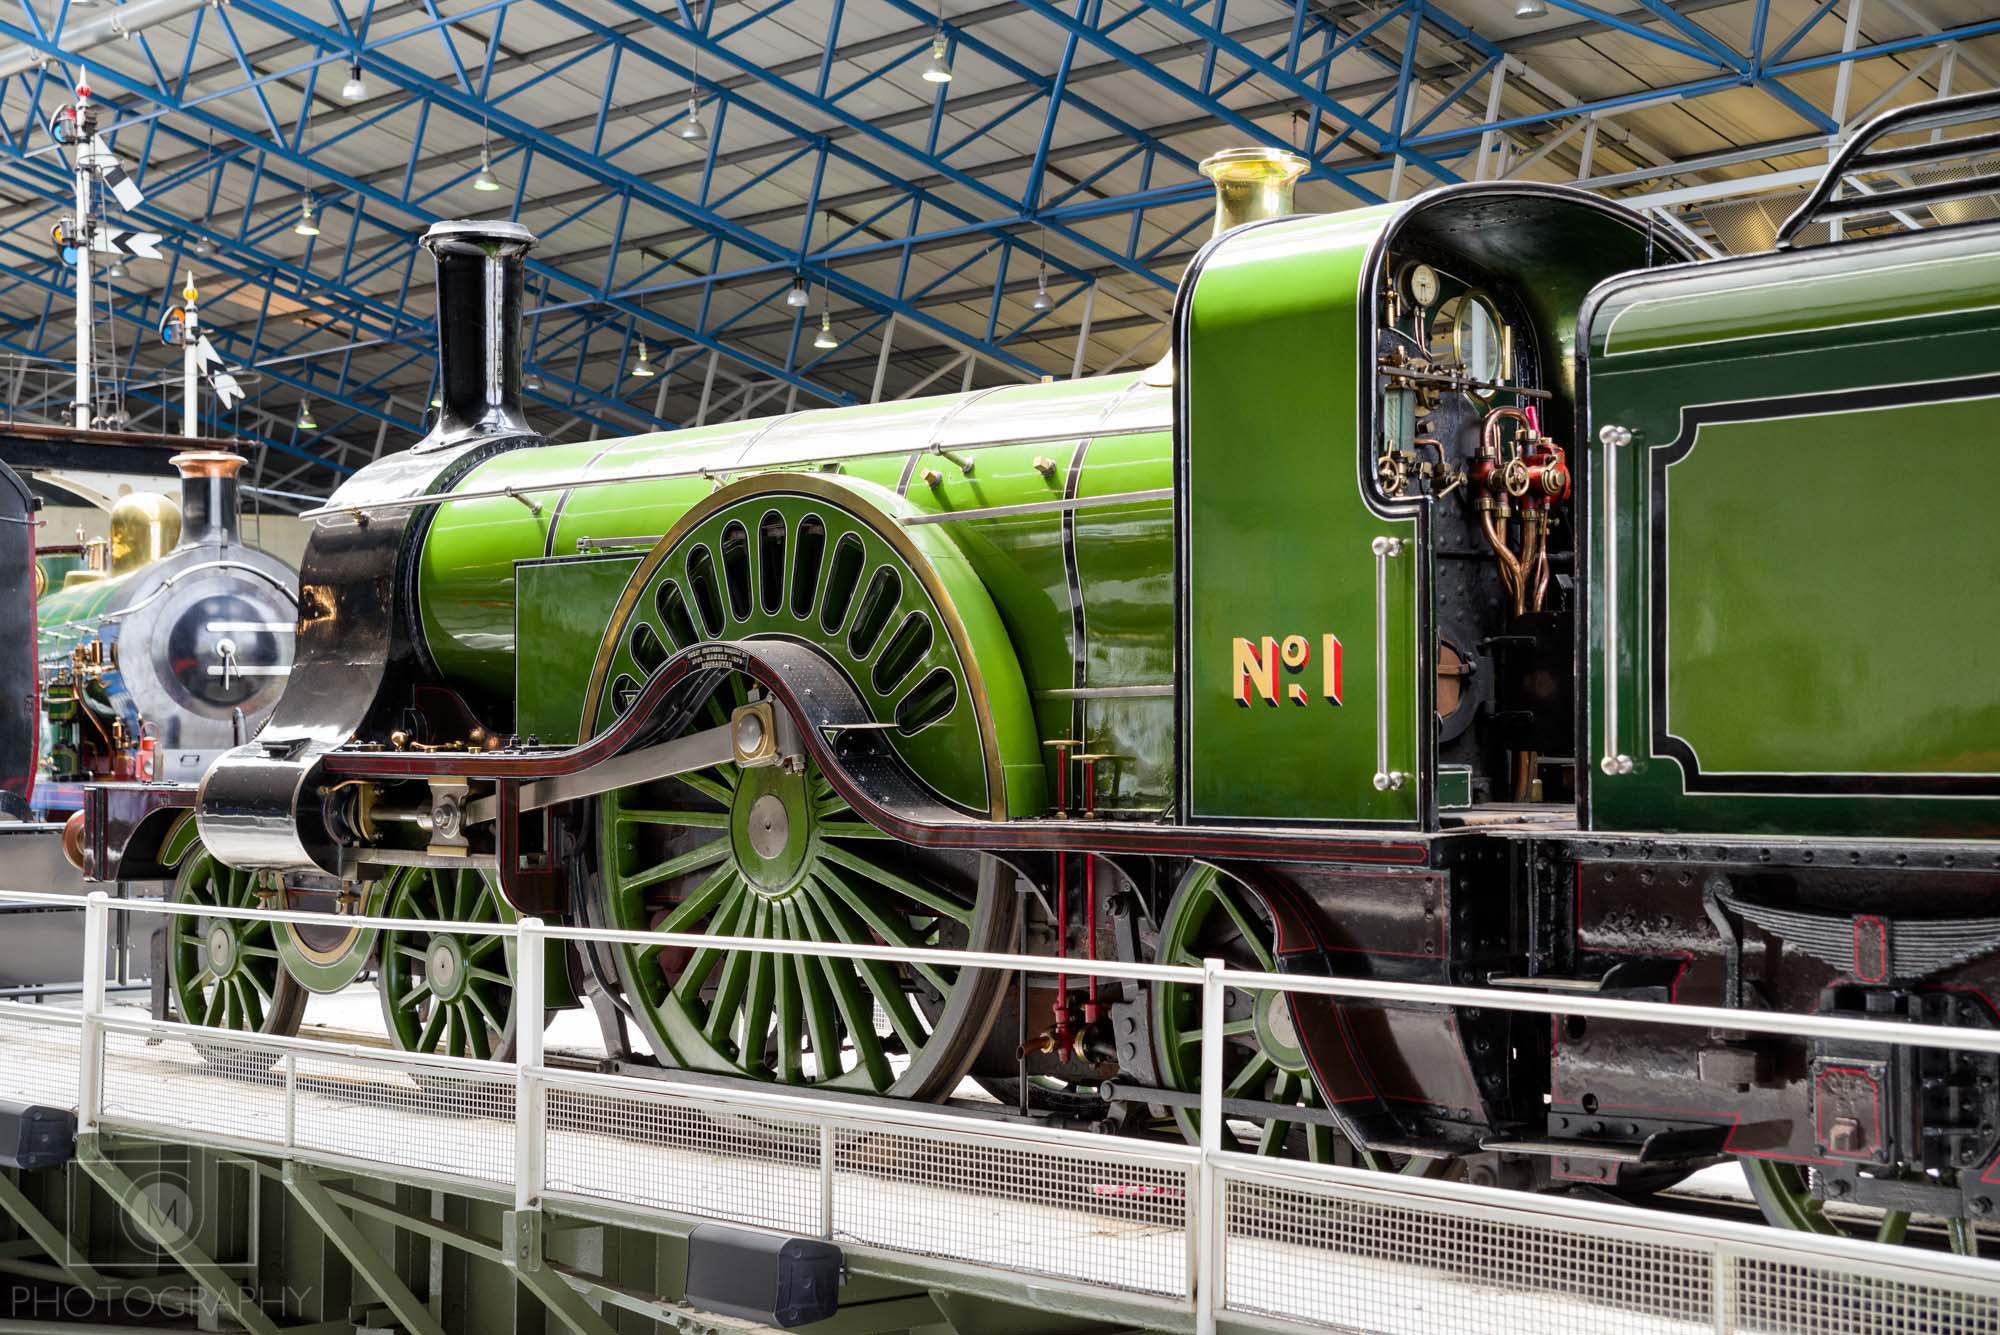 National railway museum, York